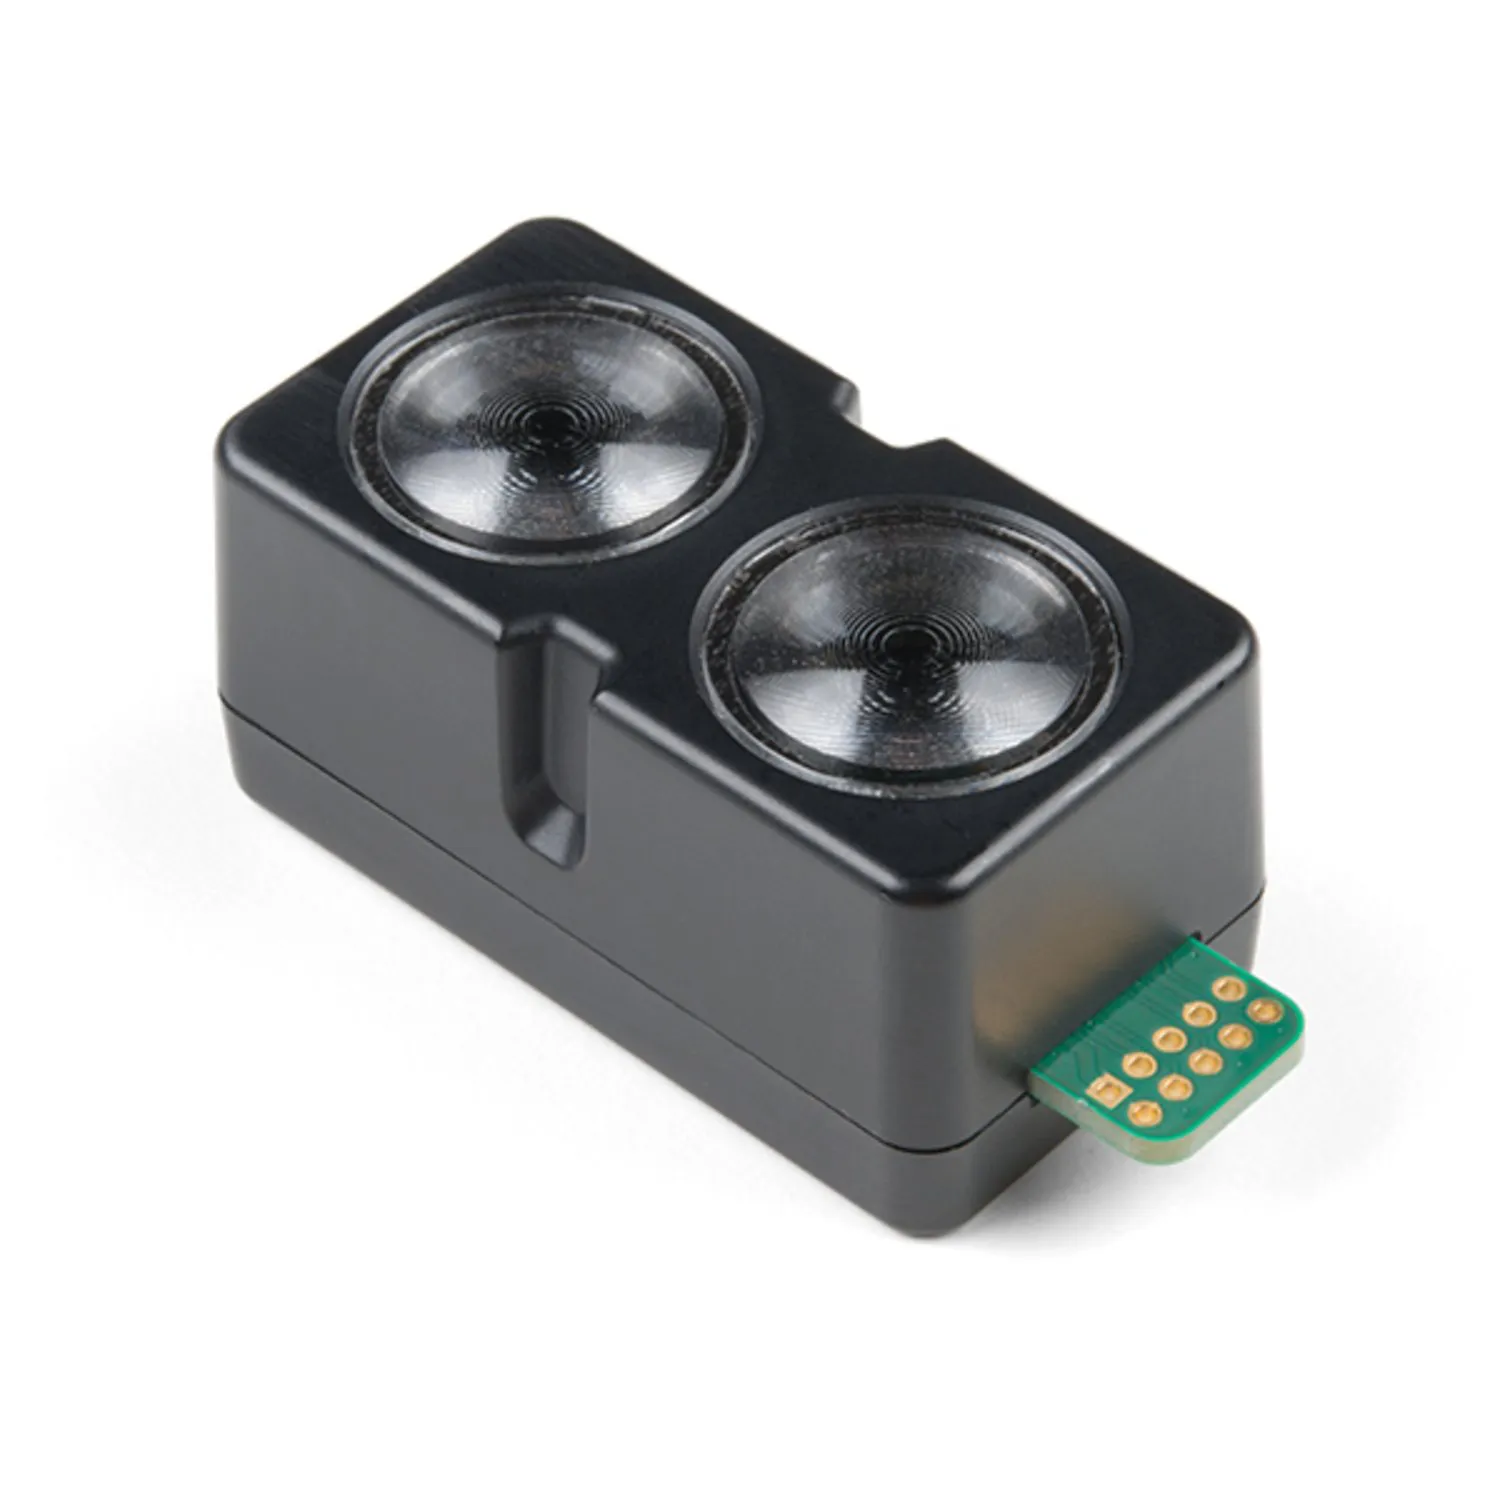 Photo of Garmin LIDAR-Lite v4 LED - Distance Measurement Sensor